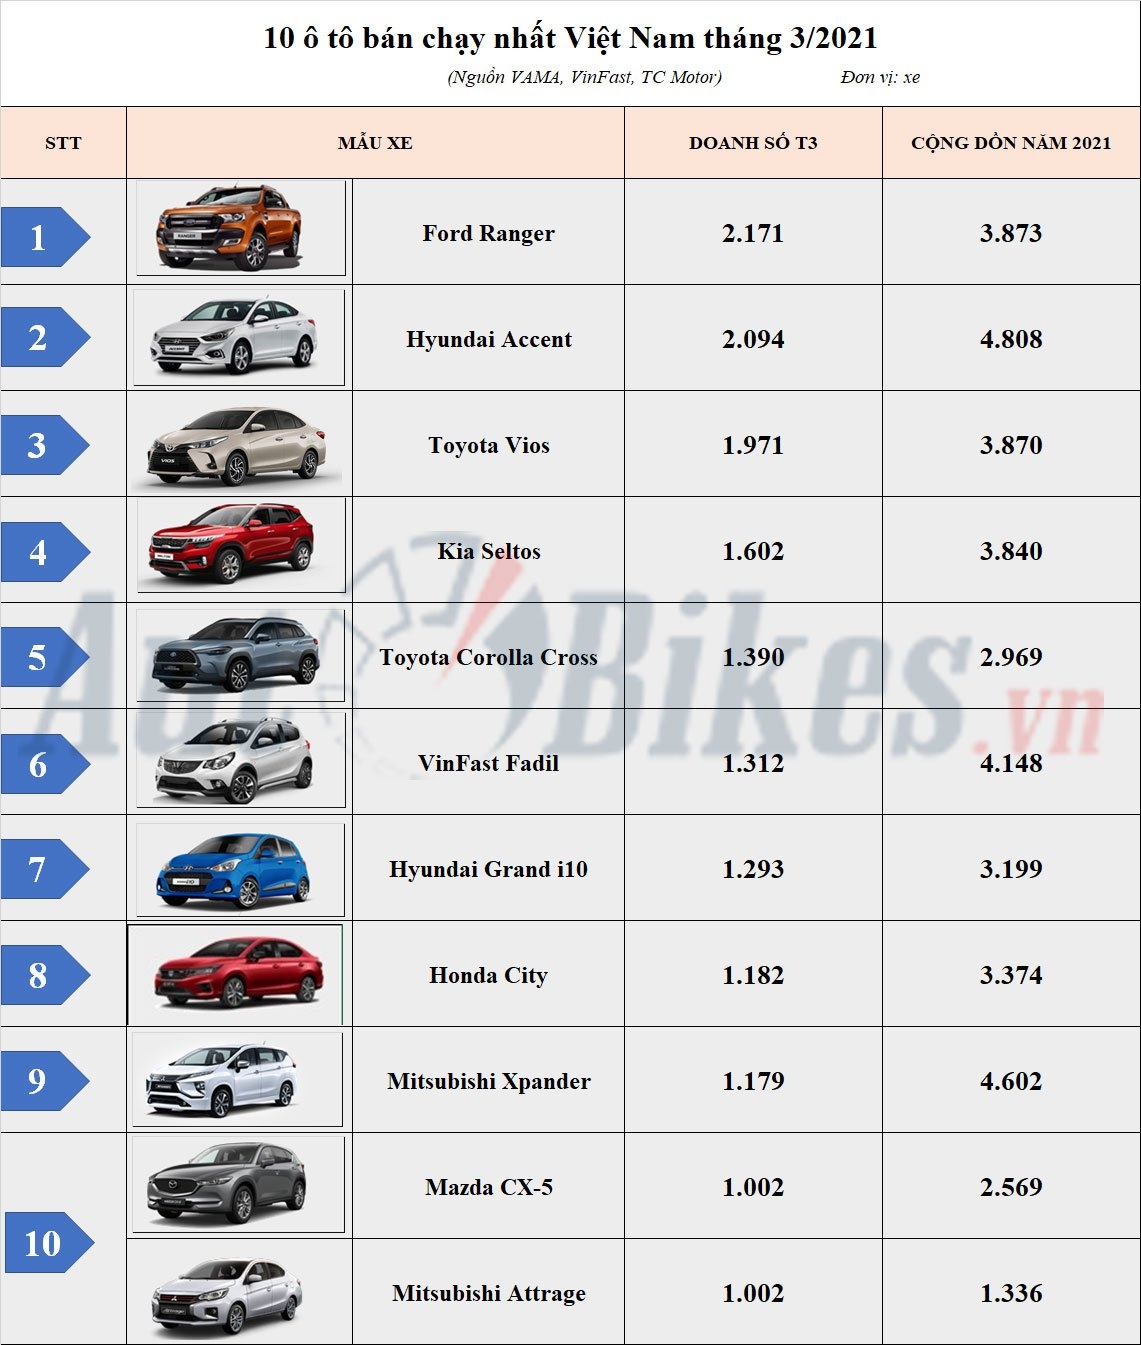 Top 10 ô tô bán chạy nhất Việt Nam tháng 3: Ford Ranger lên ngôi